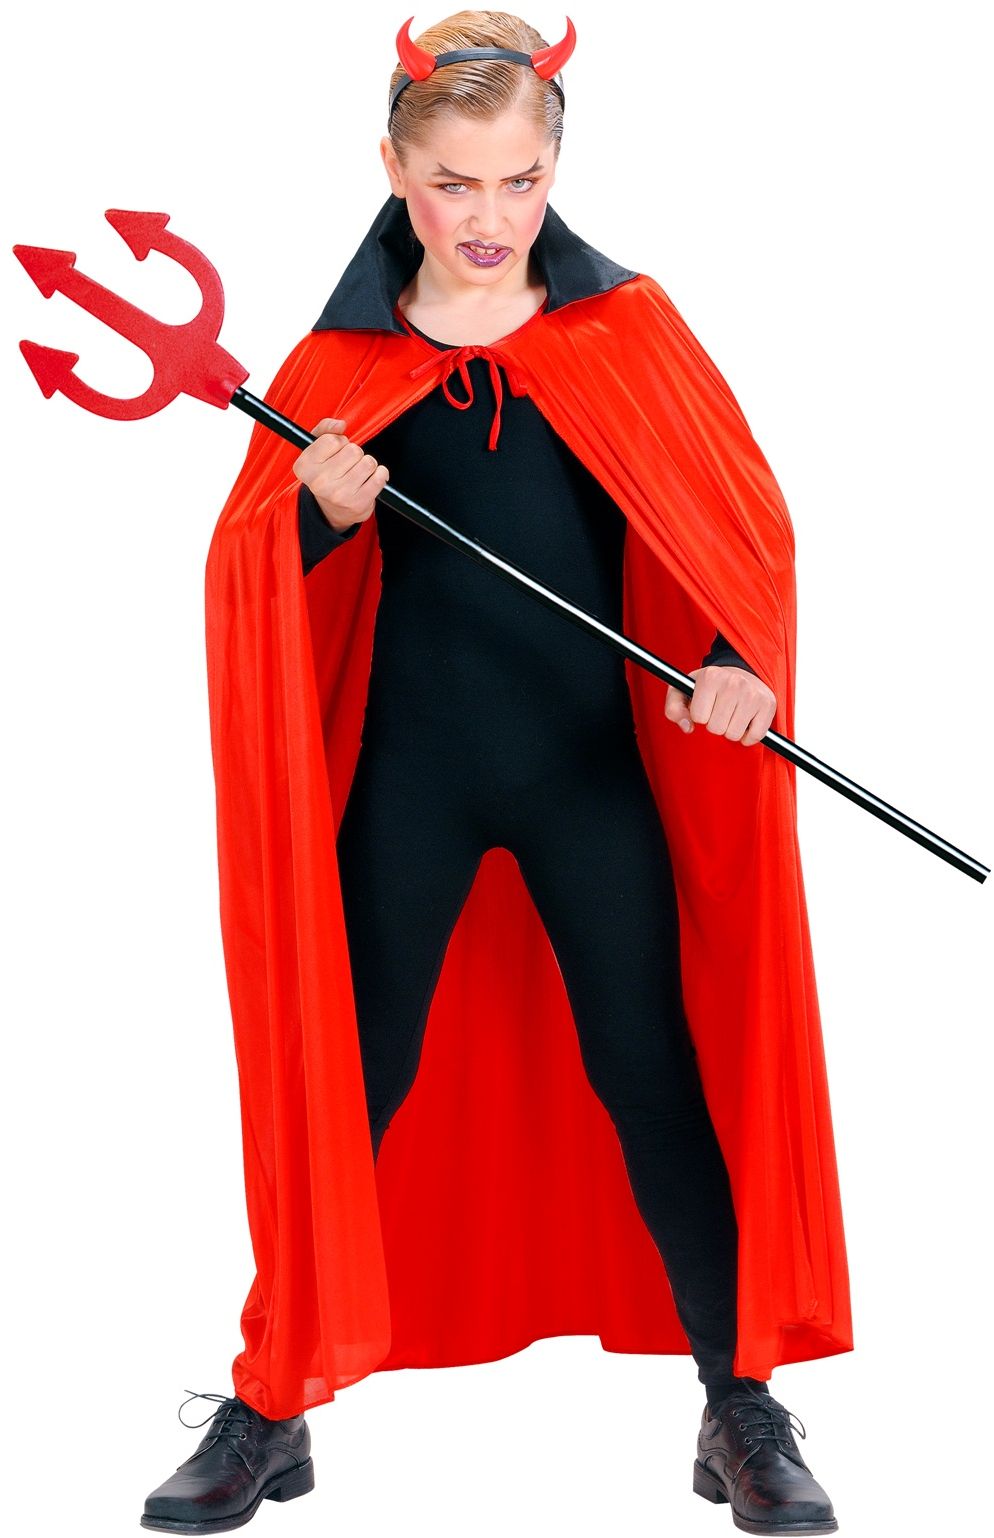 Betere Duivel kostuum voor Halloween kopen - Feestkleding.nl ZQ-76